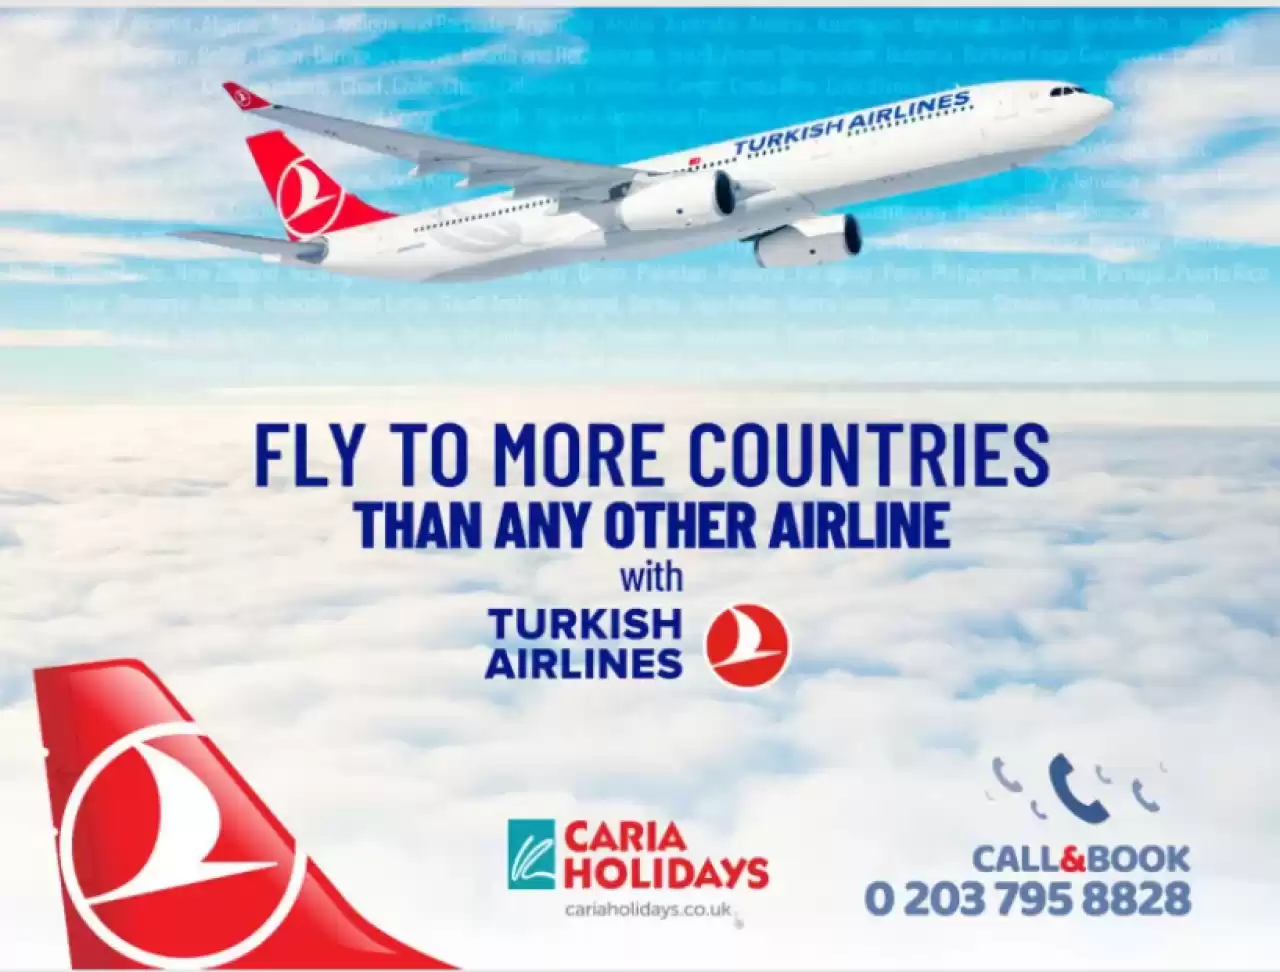 Caria Holidays ile En Uygun Fiyatlı Türk Hava Yolları Uçak Bileti Fırsatları